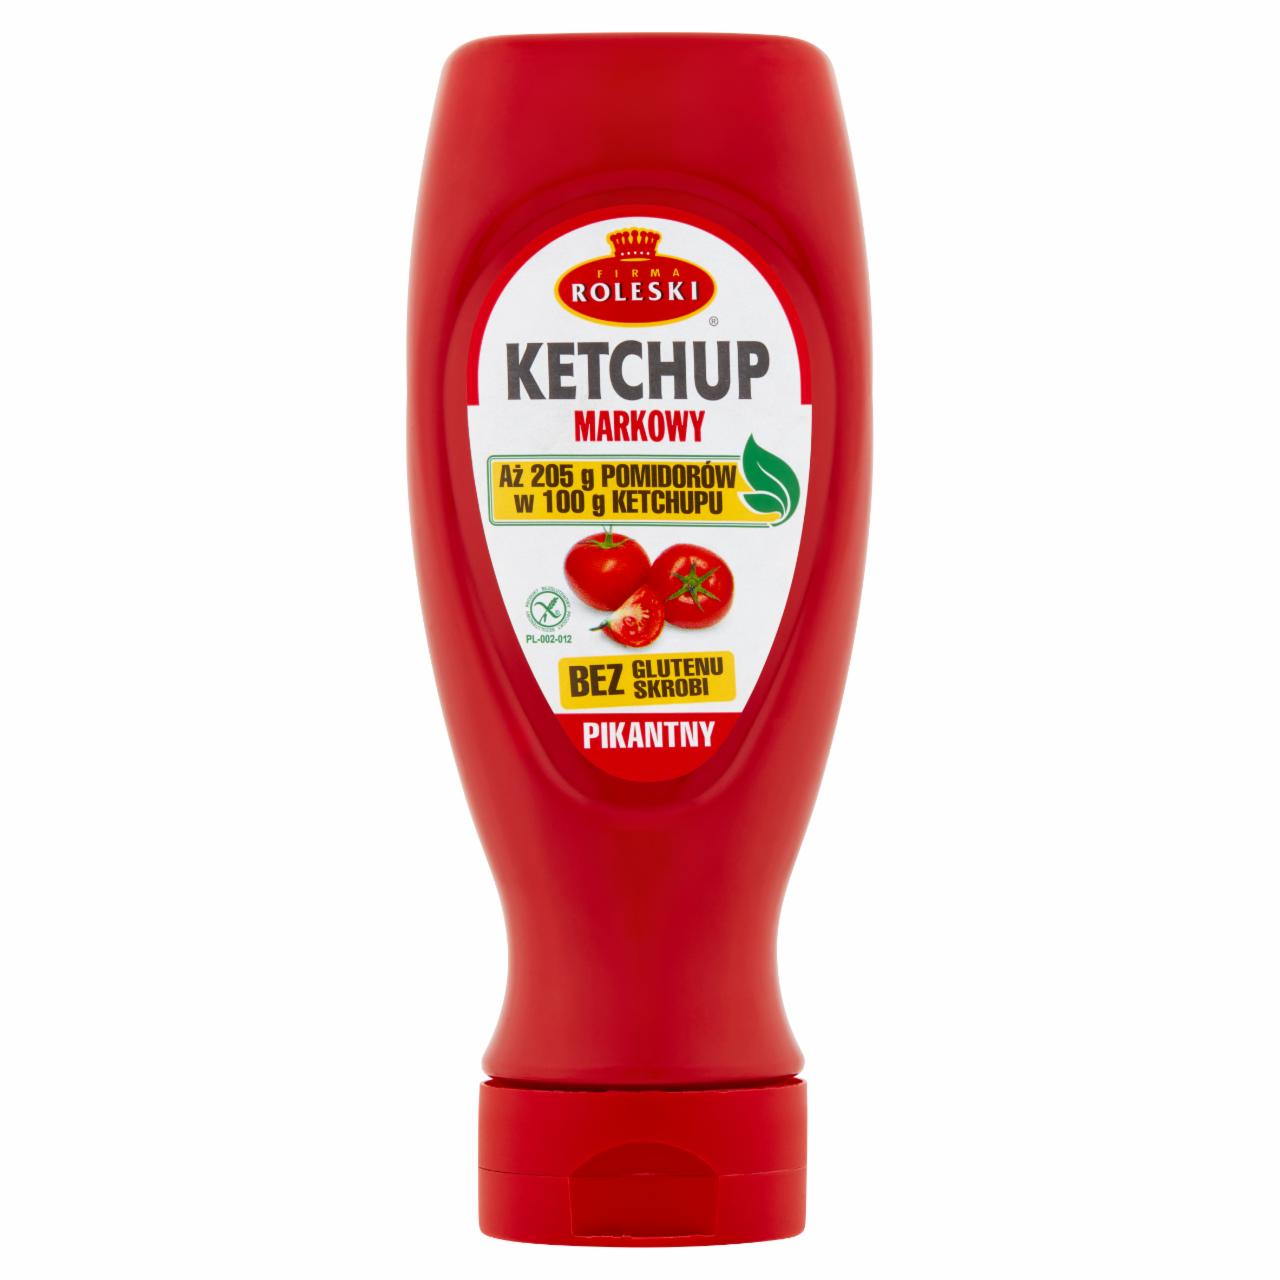 Zdjęcia - Firma Roleski Ketchup markowy pikantny 450 g